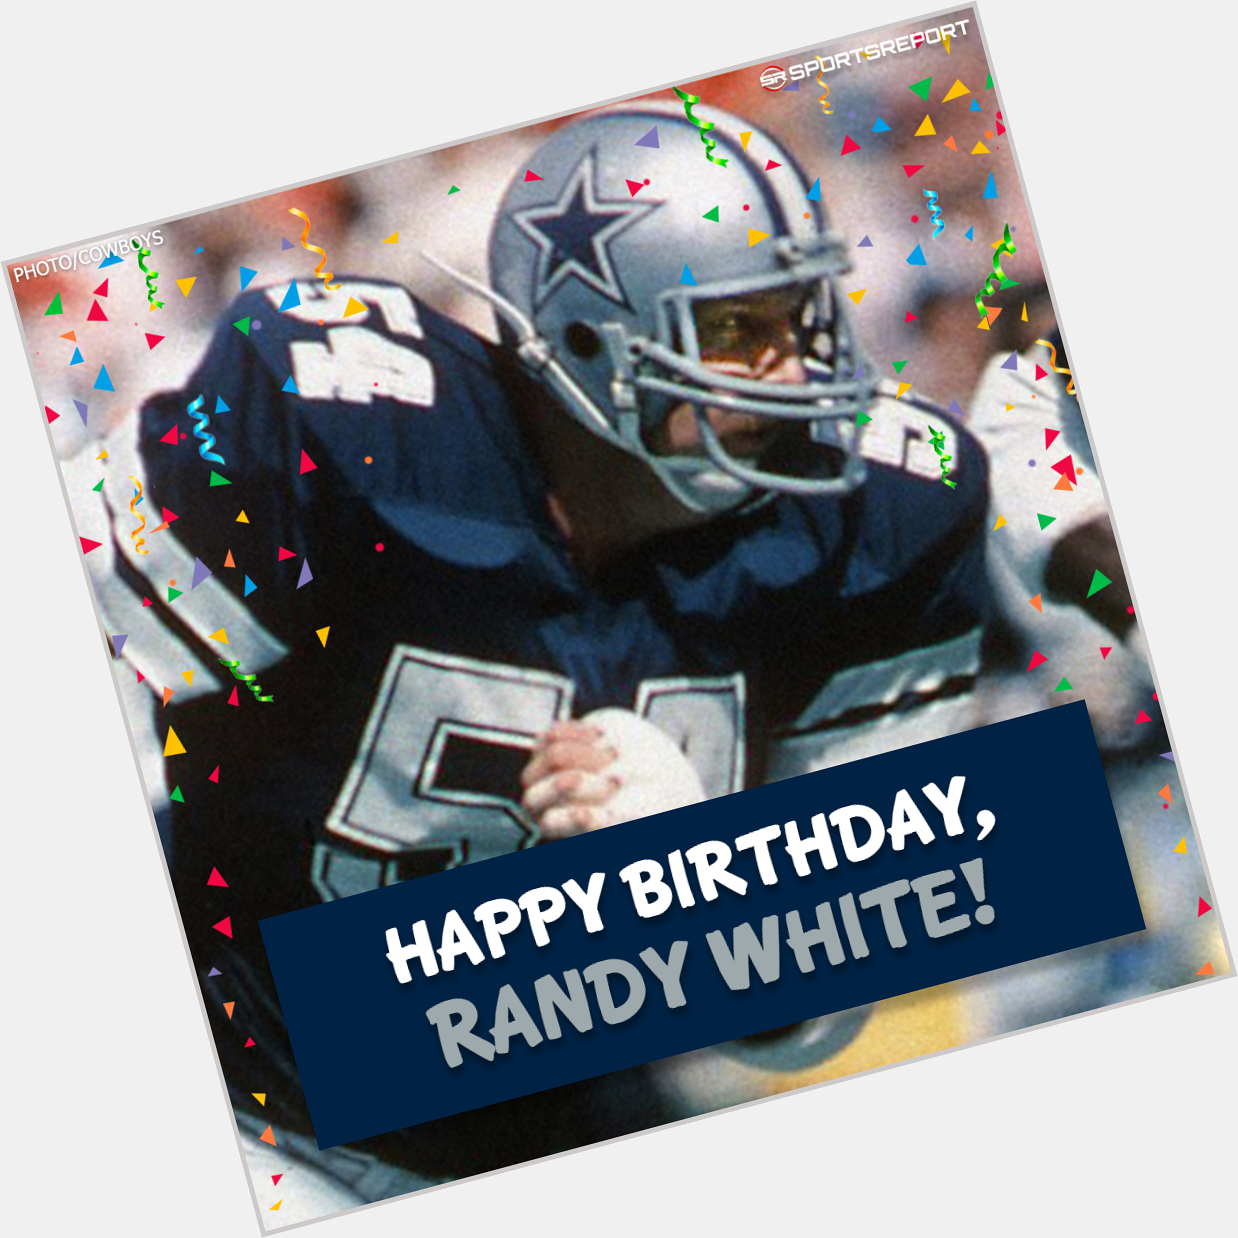 Happy Birthday to Cowboys Legend, Randy White! 